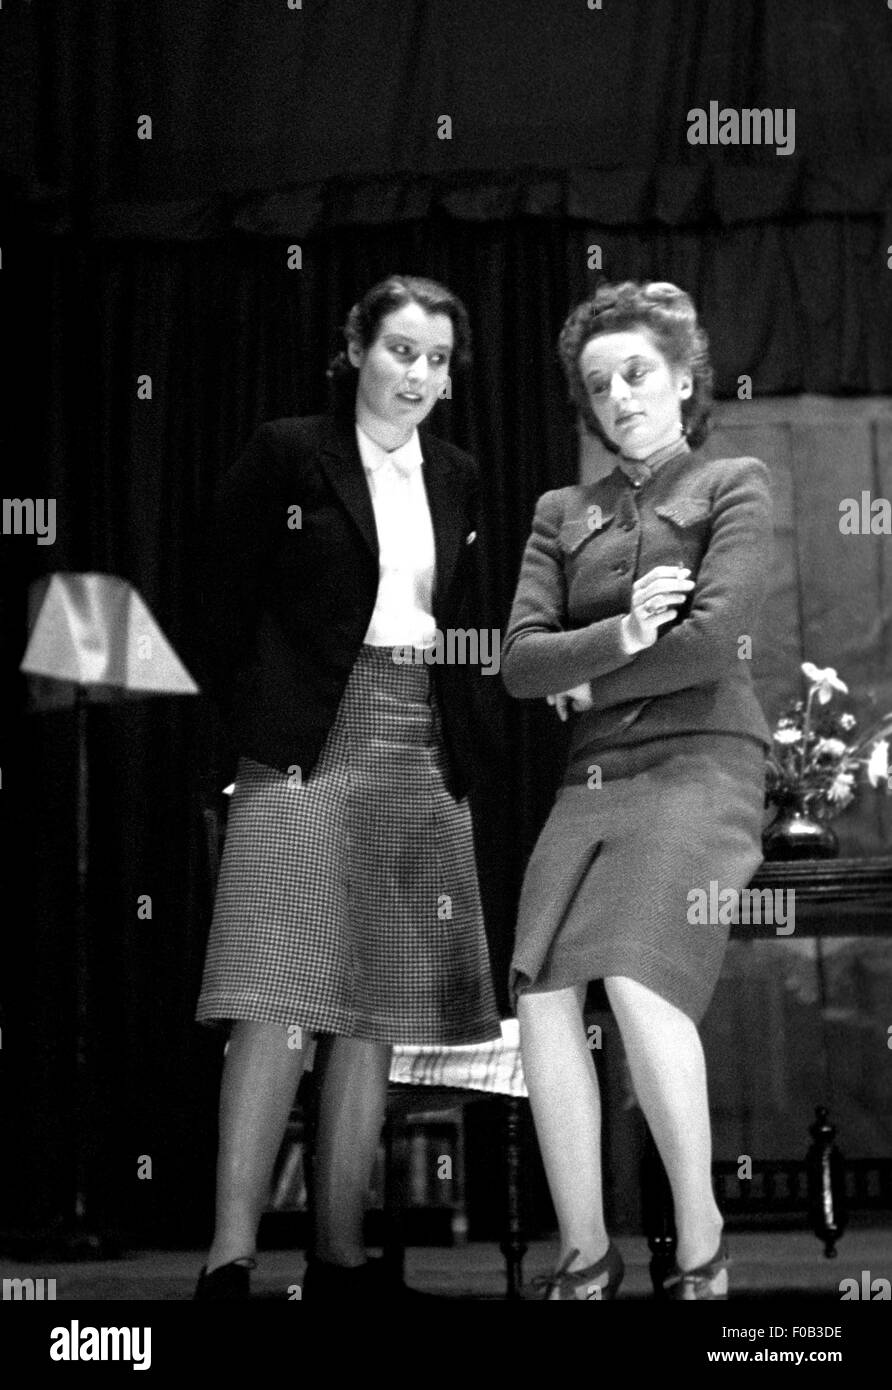 Deux femmes sur scène agissant dans une pièce Banque D'Images